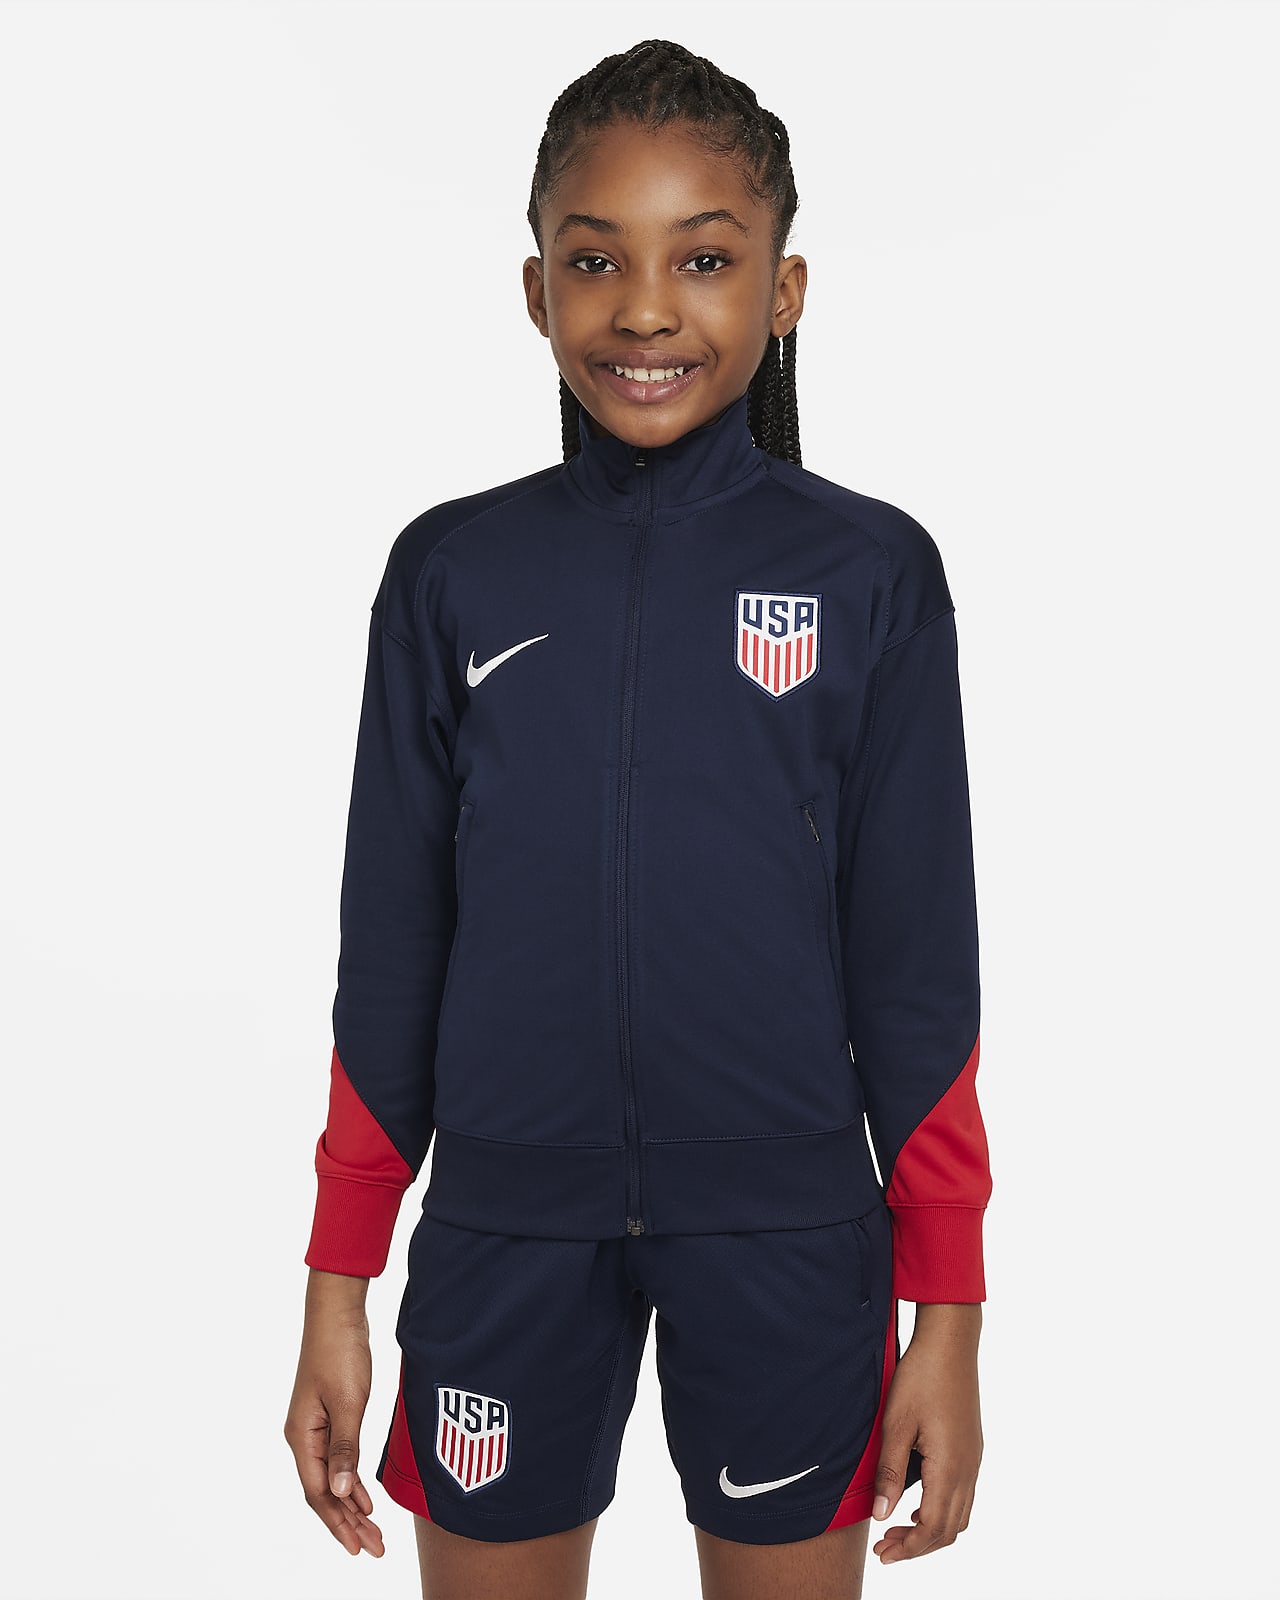 USMNT Strike Big Kids' Nike Dri-FIT Soccer Track Jacket